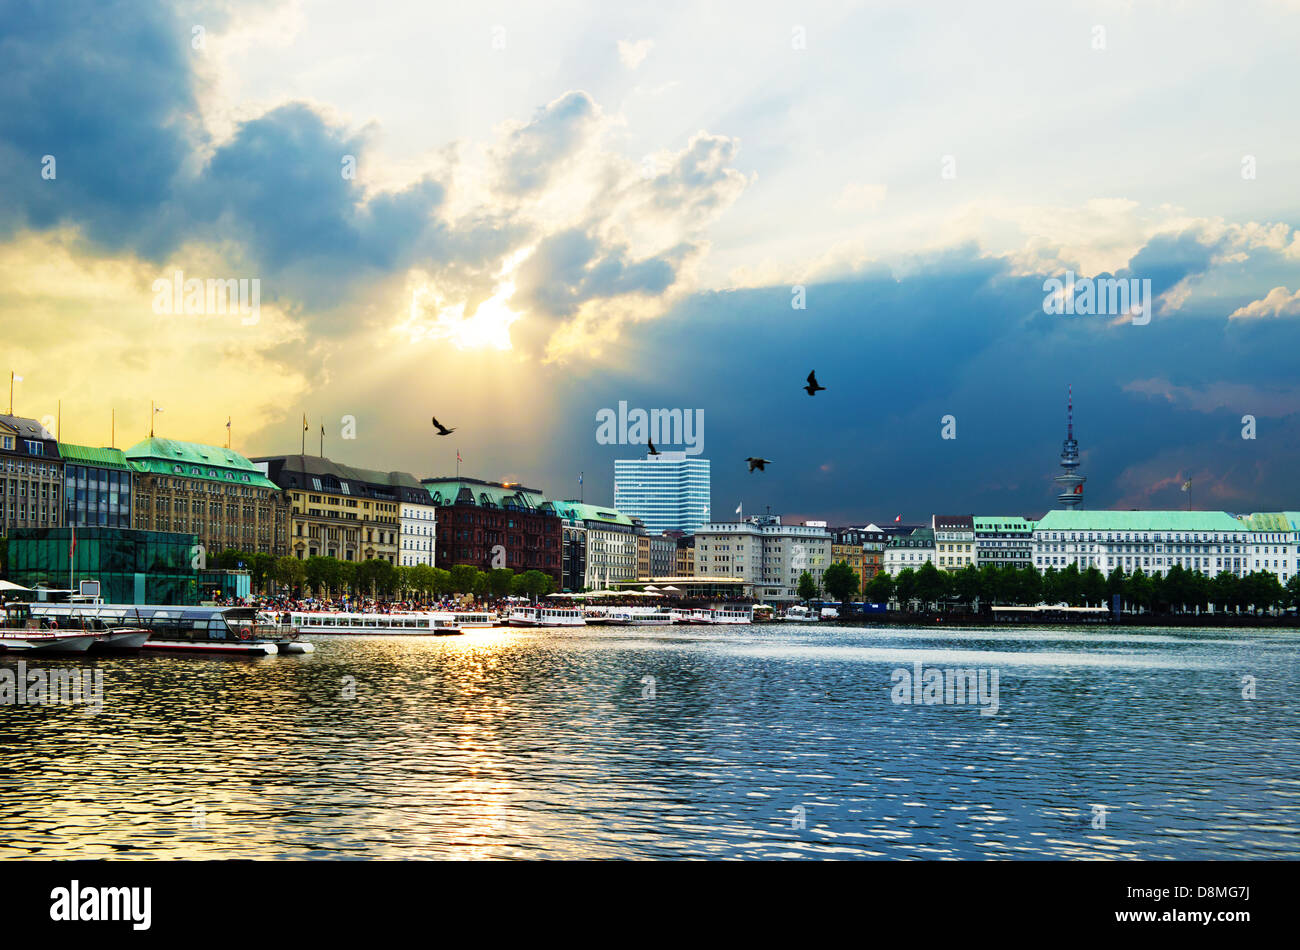 Imagen HDR del Binnenalster en el centro de Hamburgo, Alemania. Foto de stock